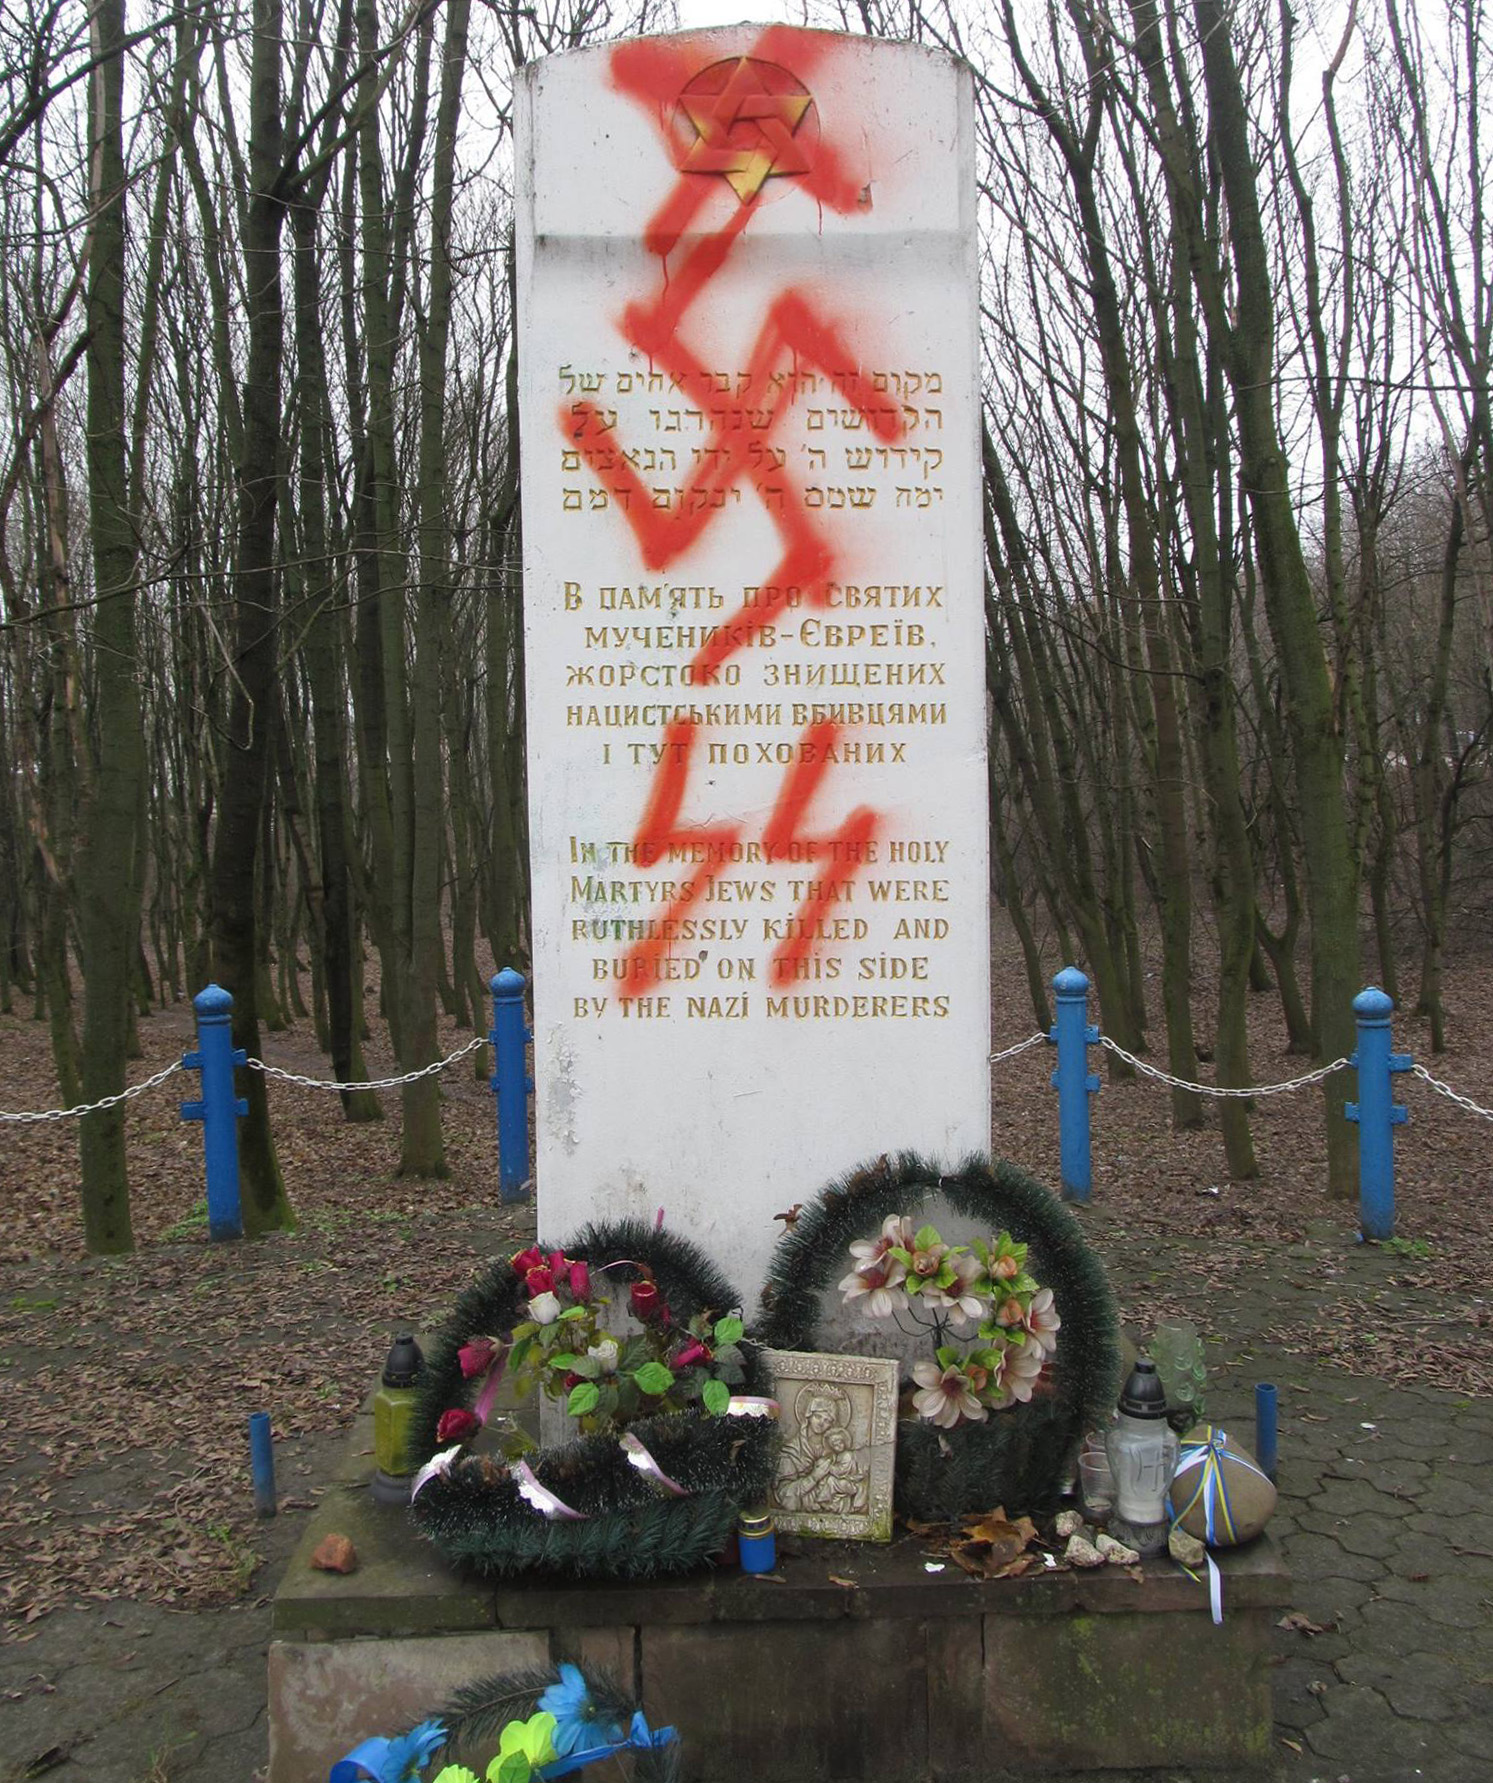 «Смерть ж*дам» и Sieg Heil: как в Украине оскверняют еврейские памятники, пока власти бездействуют - 5 - изображение